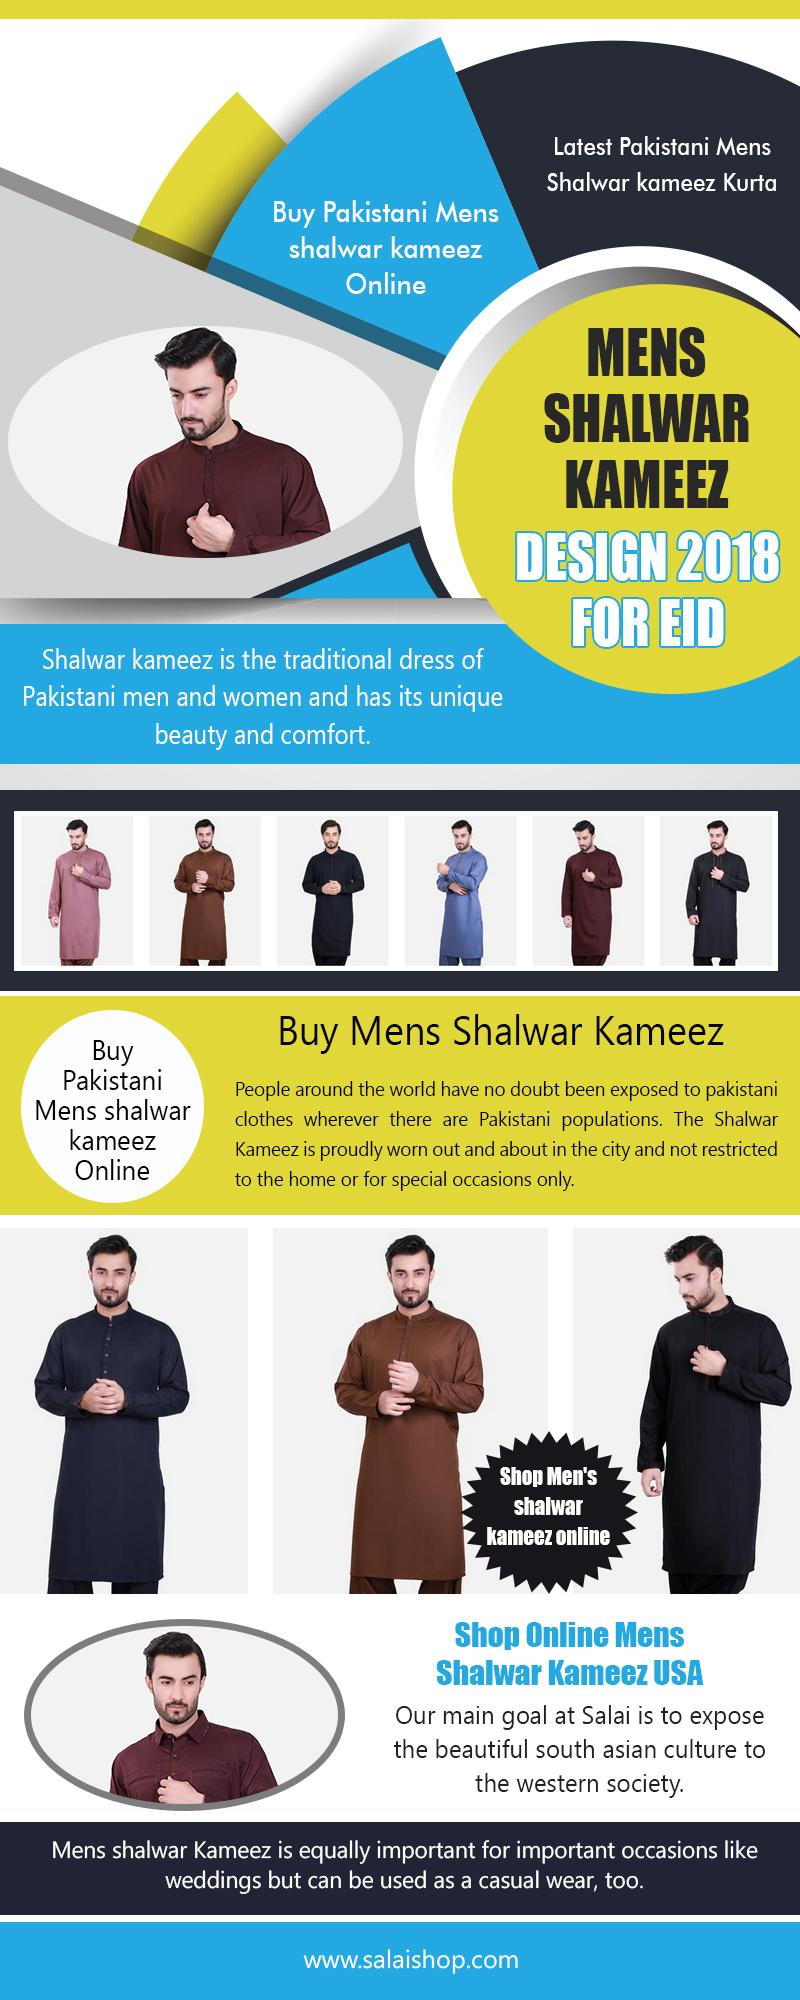 Mens Shalwar Kameez Design 2018 for Eid